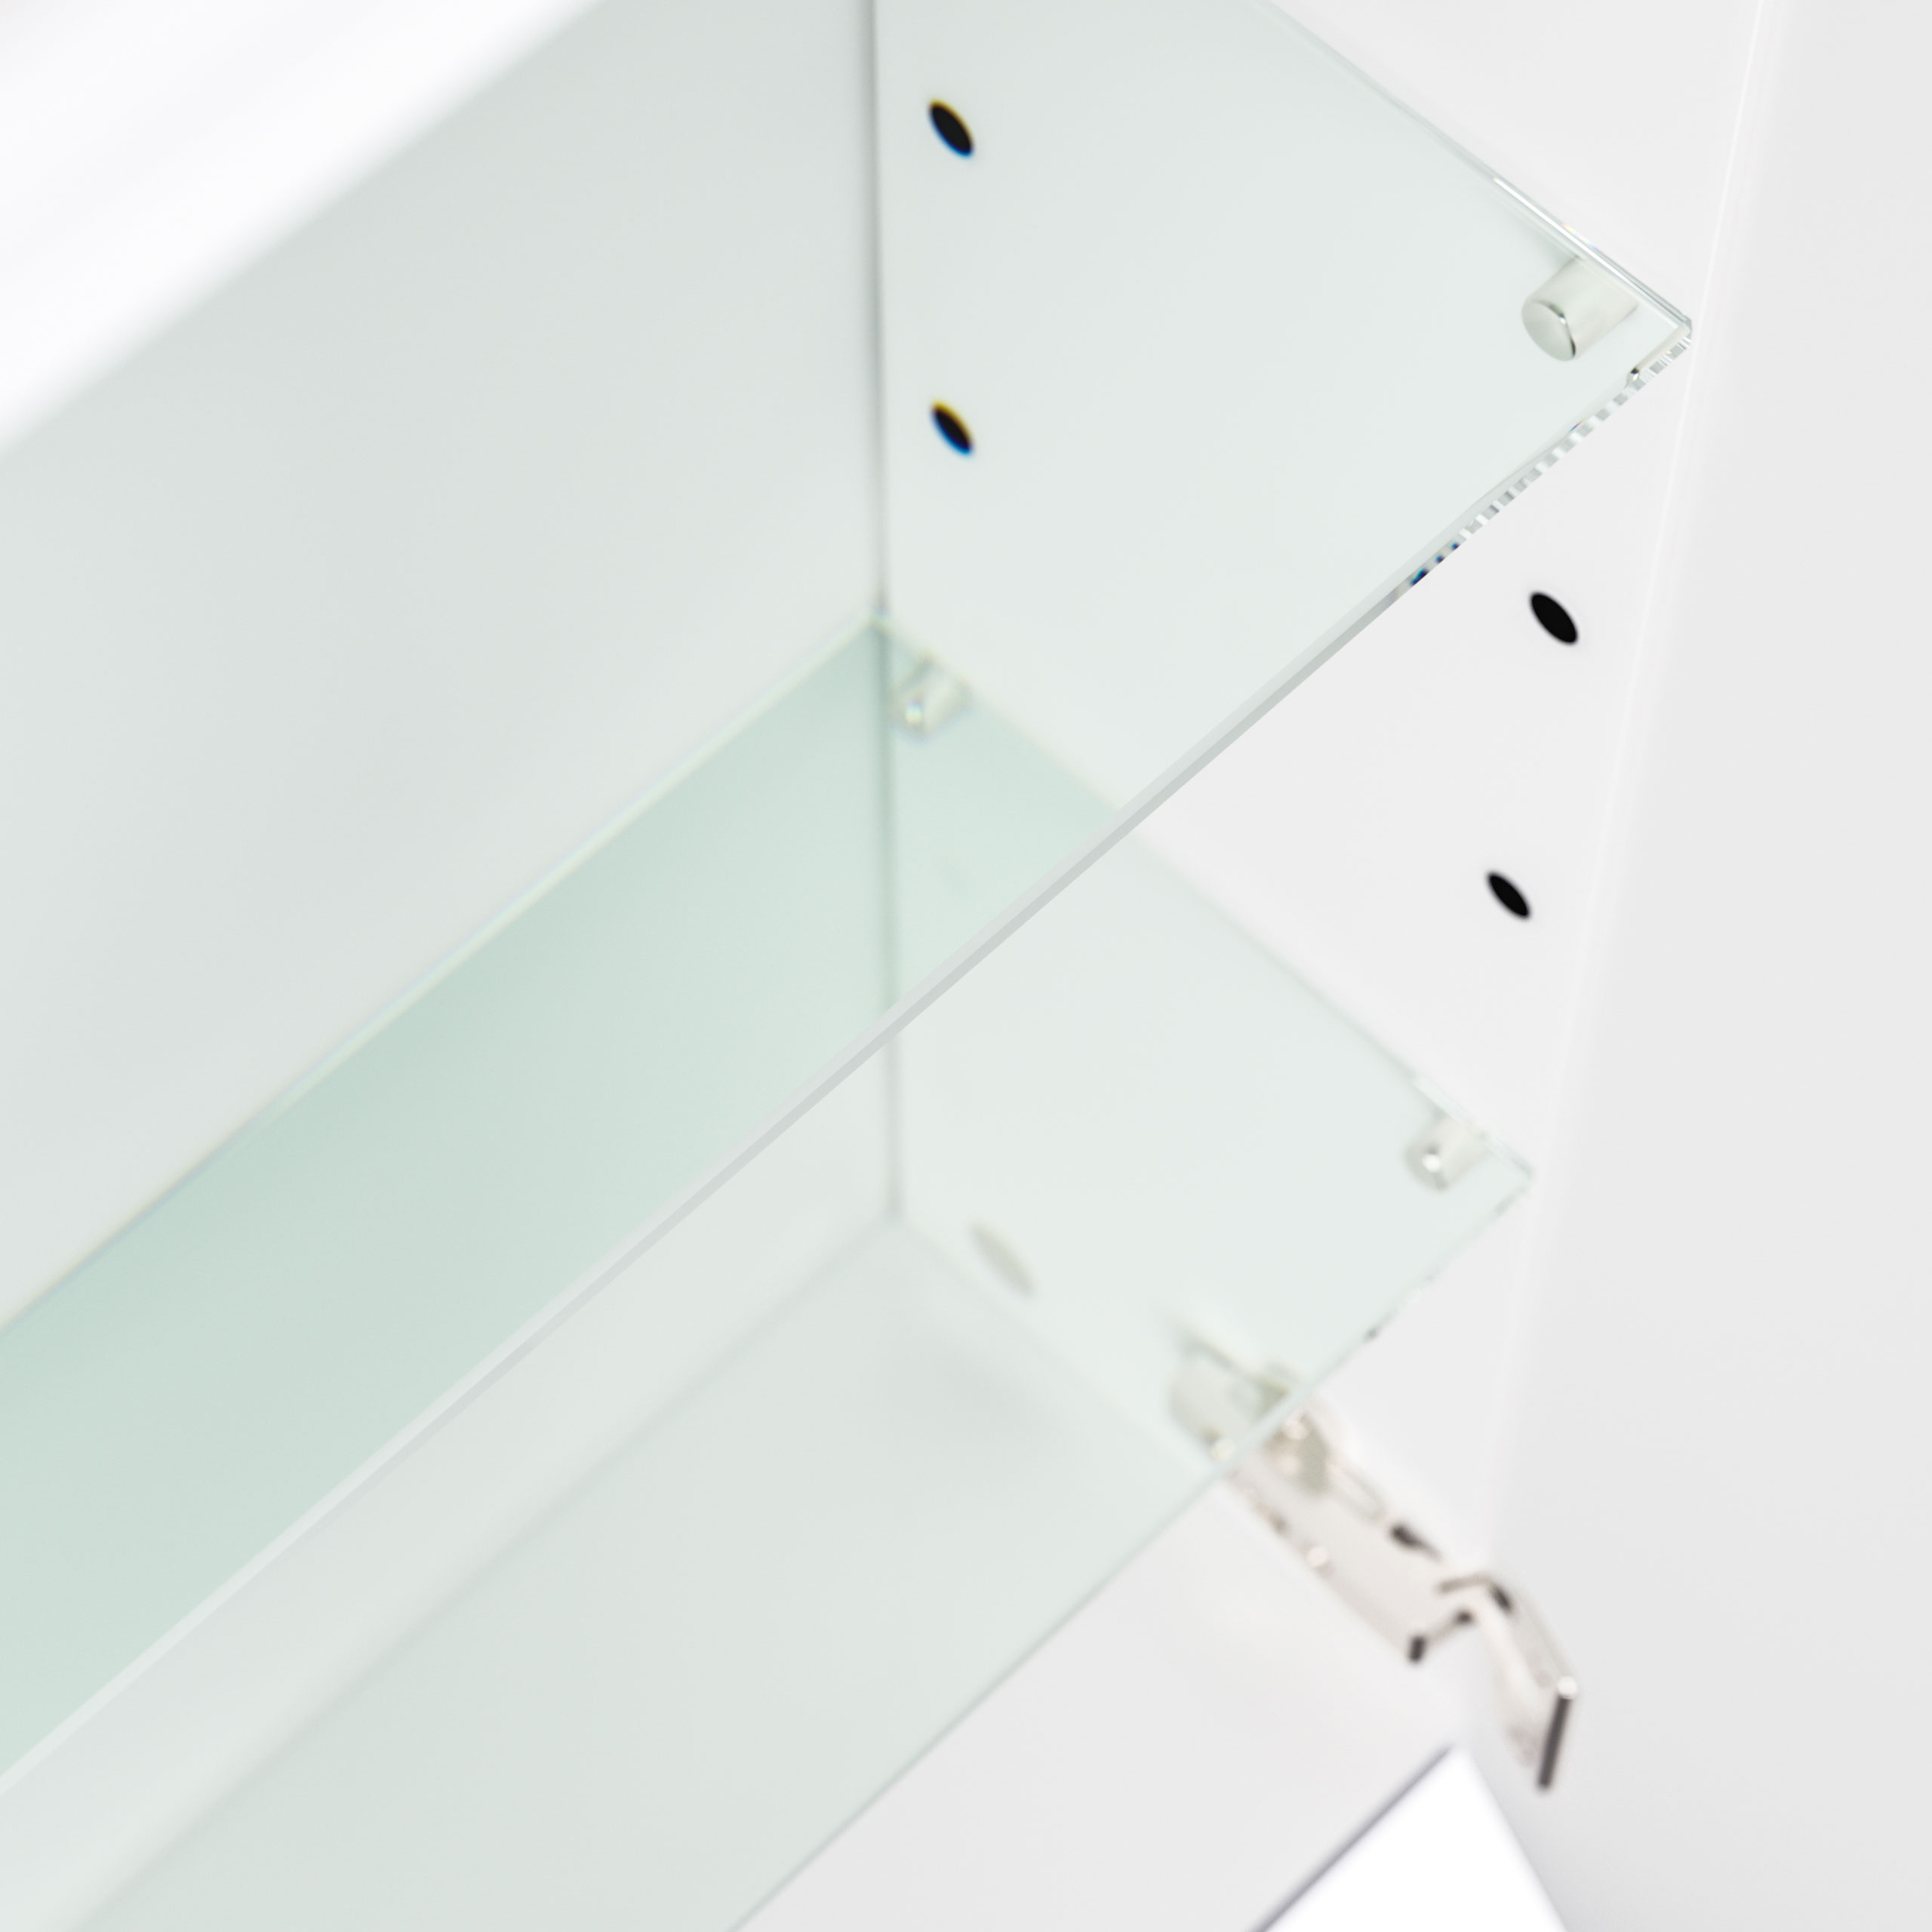 Spiegelschrank 140cm inkl. Design LED-Lampe und Glasböden anthrazit seidenglanz